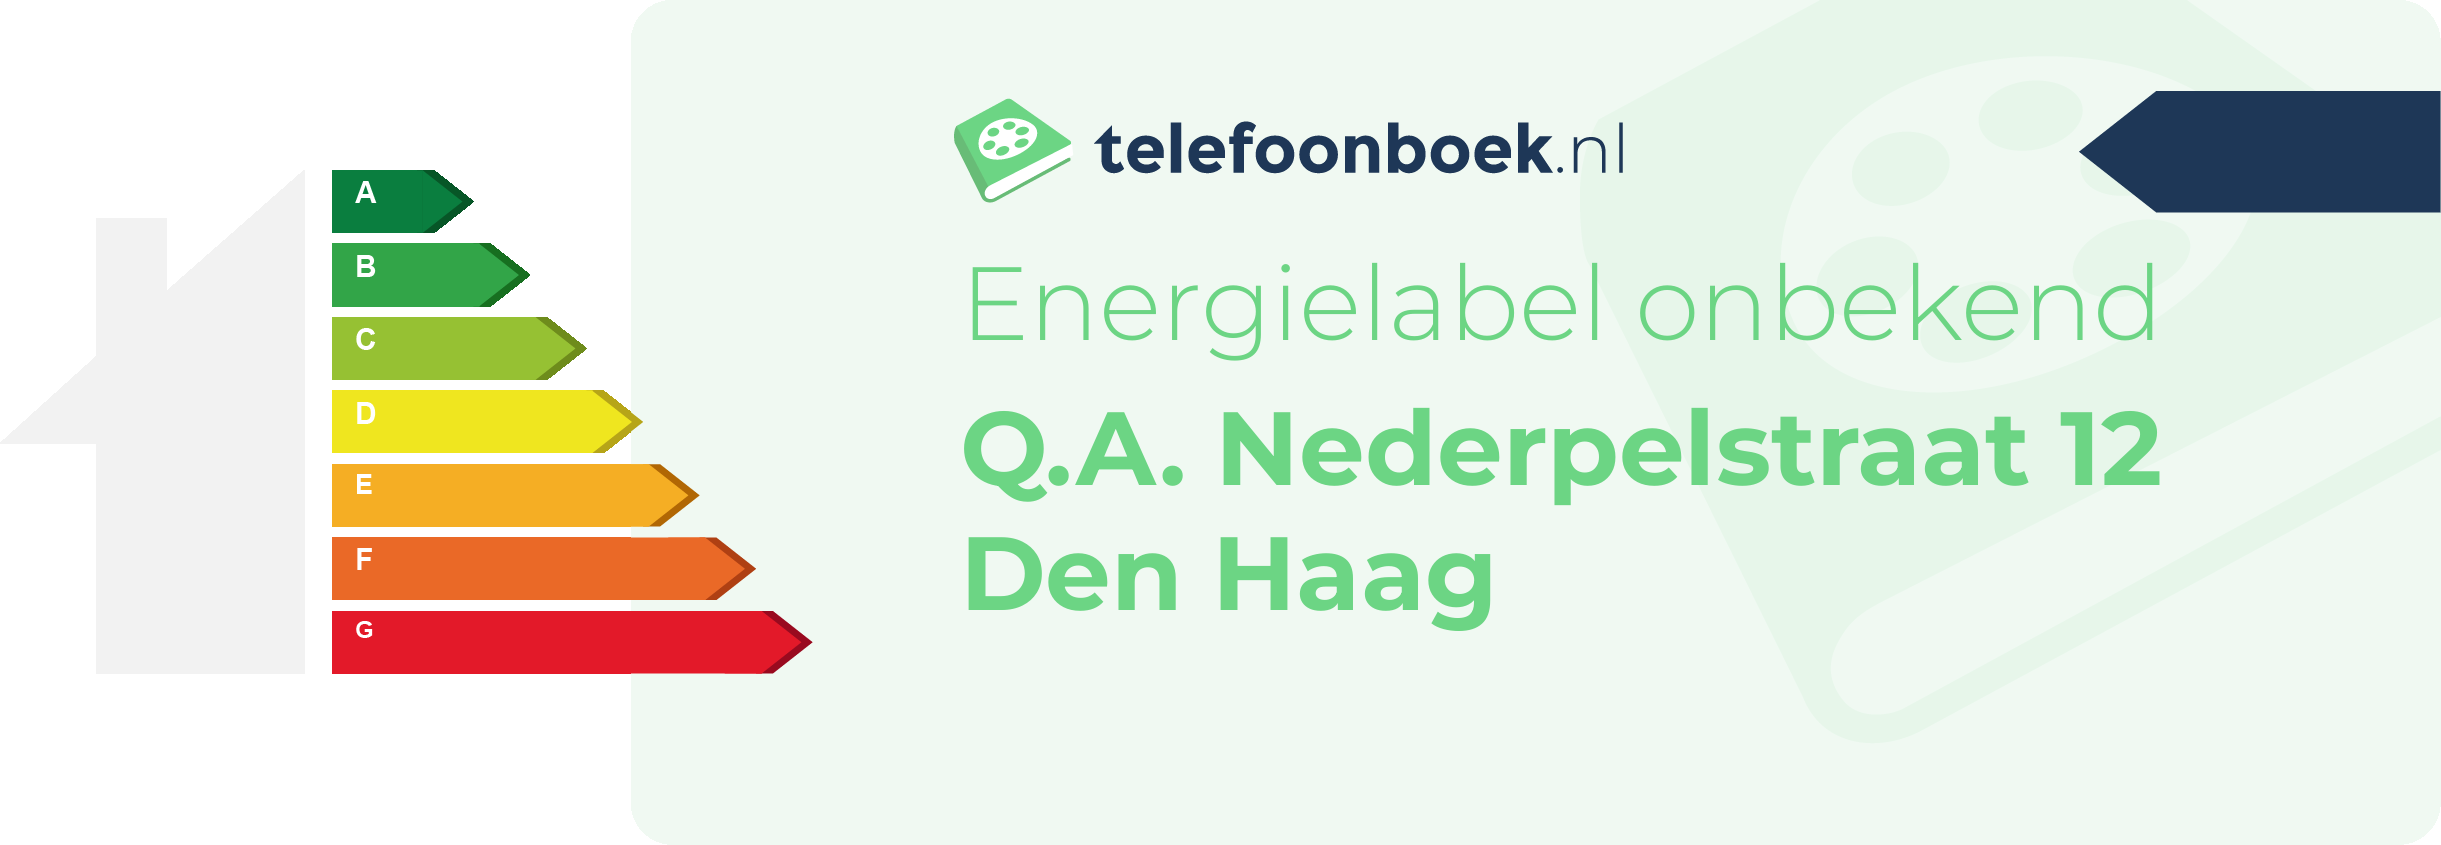 Energielabel Q.A. Nederpelstraat 12 Den Haag